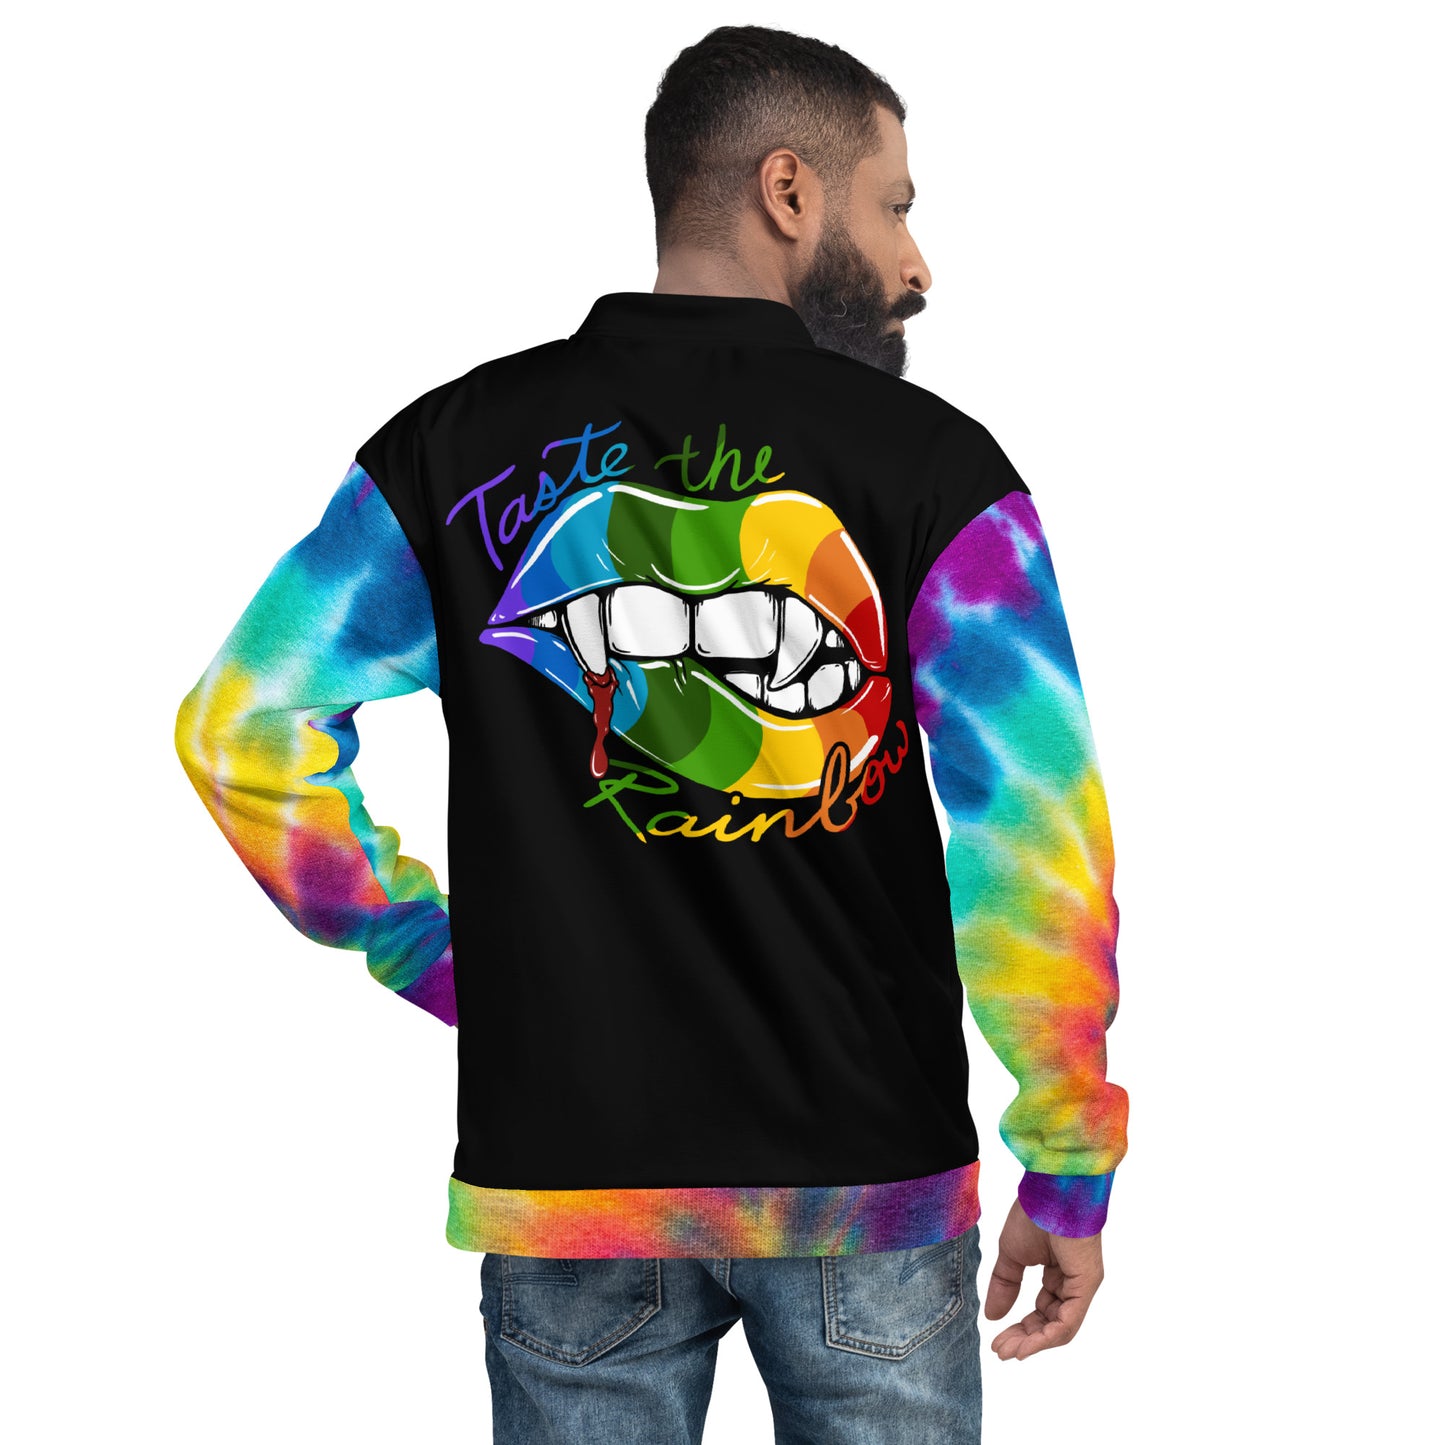 Taste the Rainbow Jacket